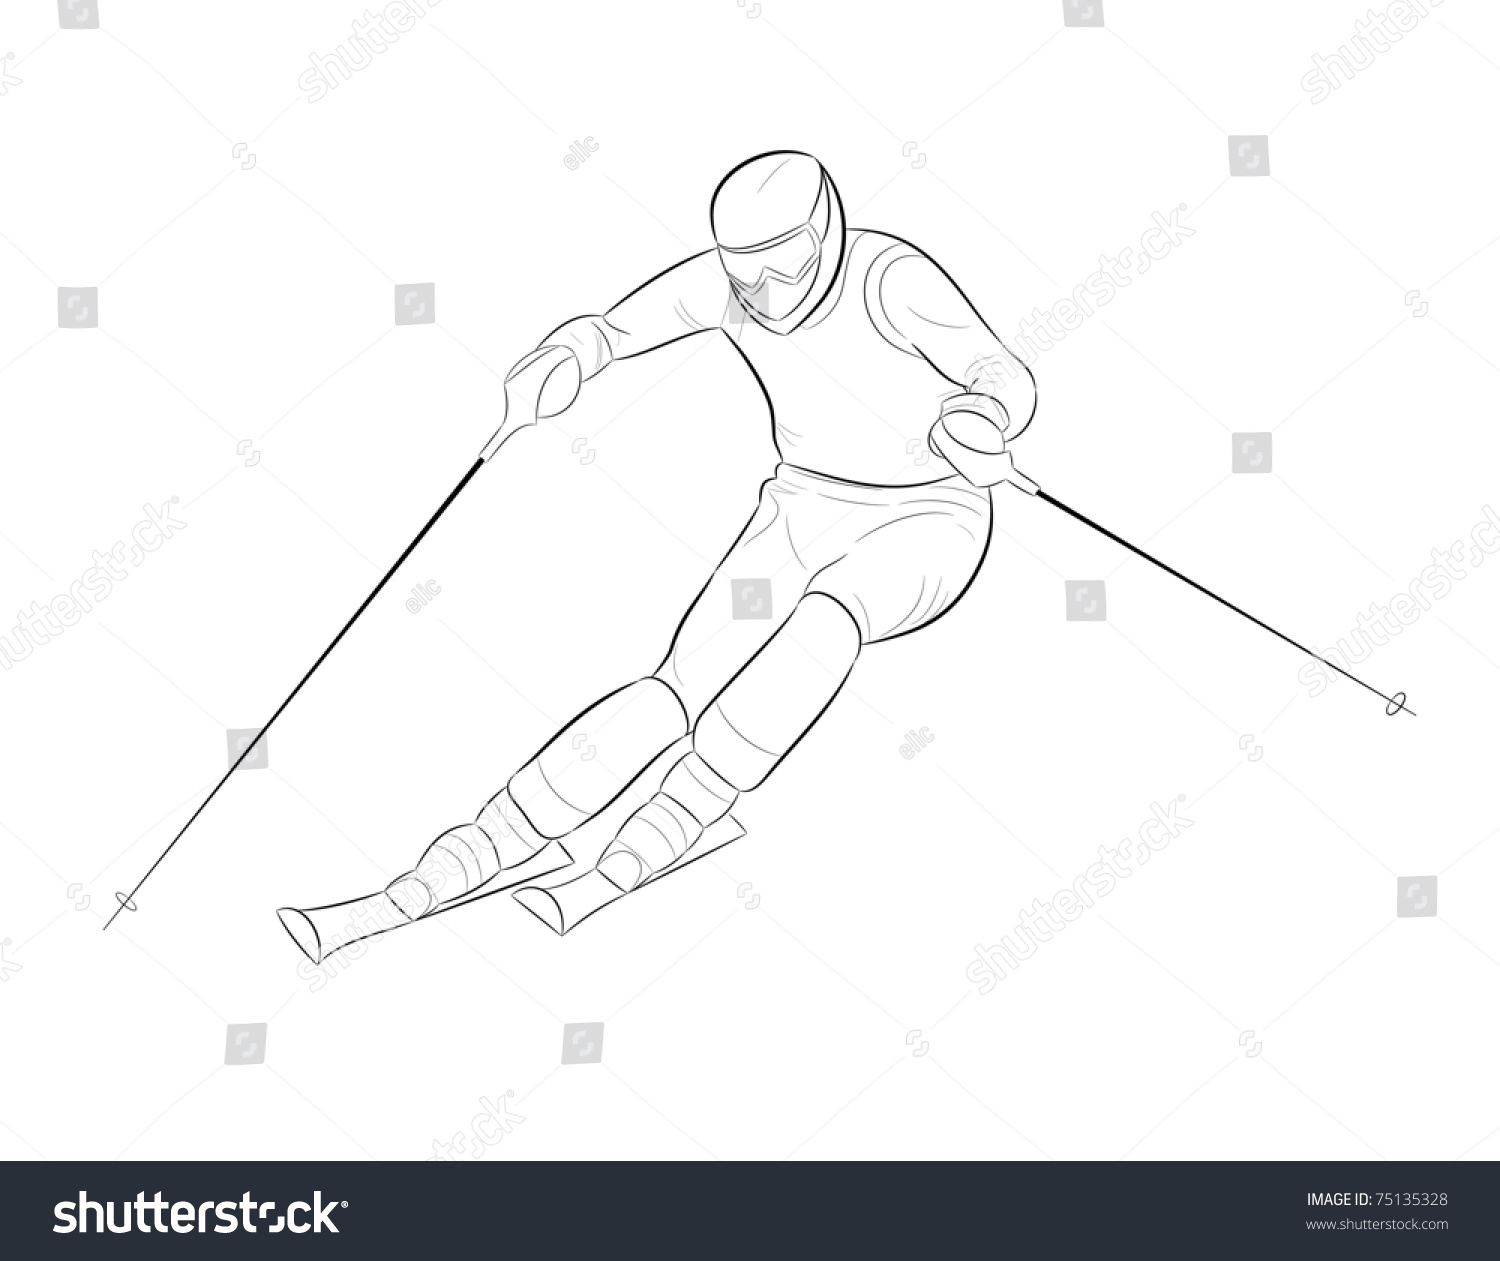 Нарисовать лыжника в движении